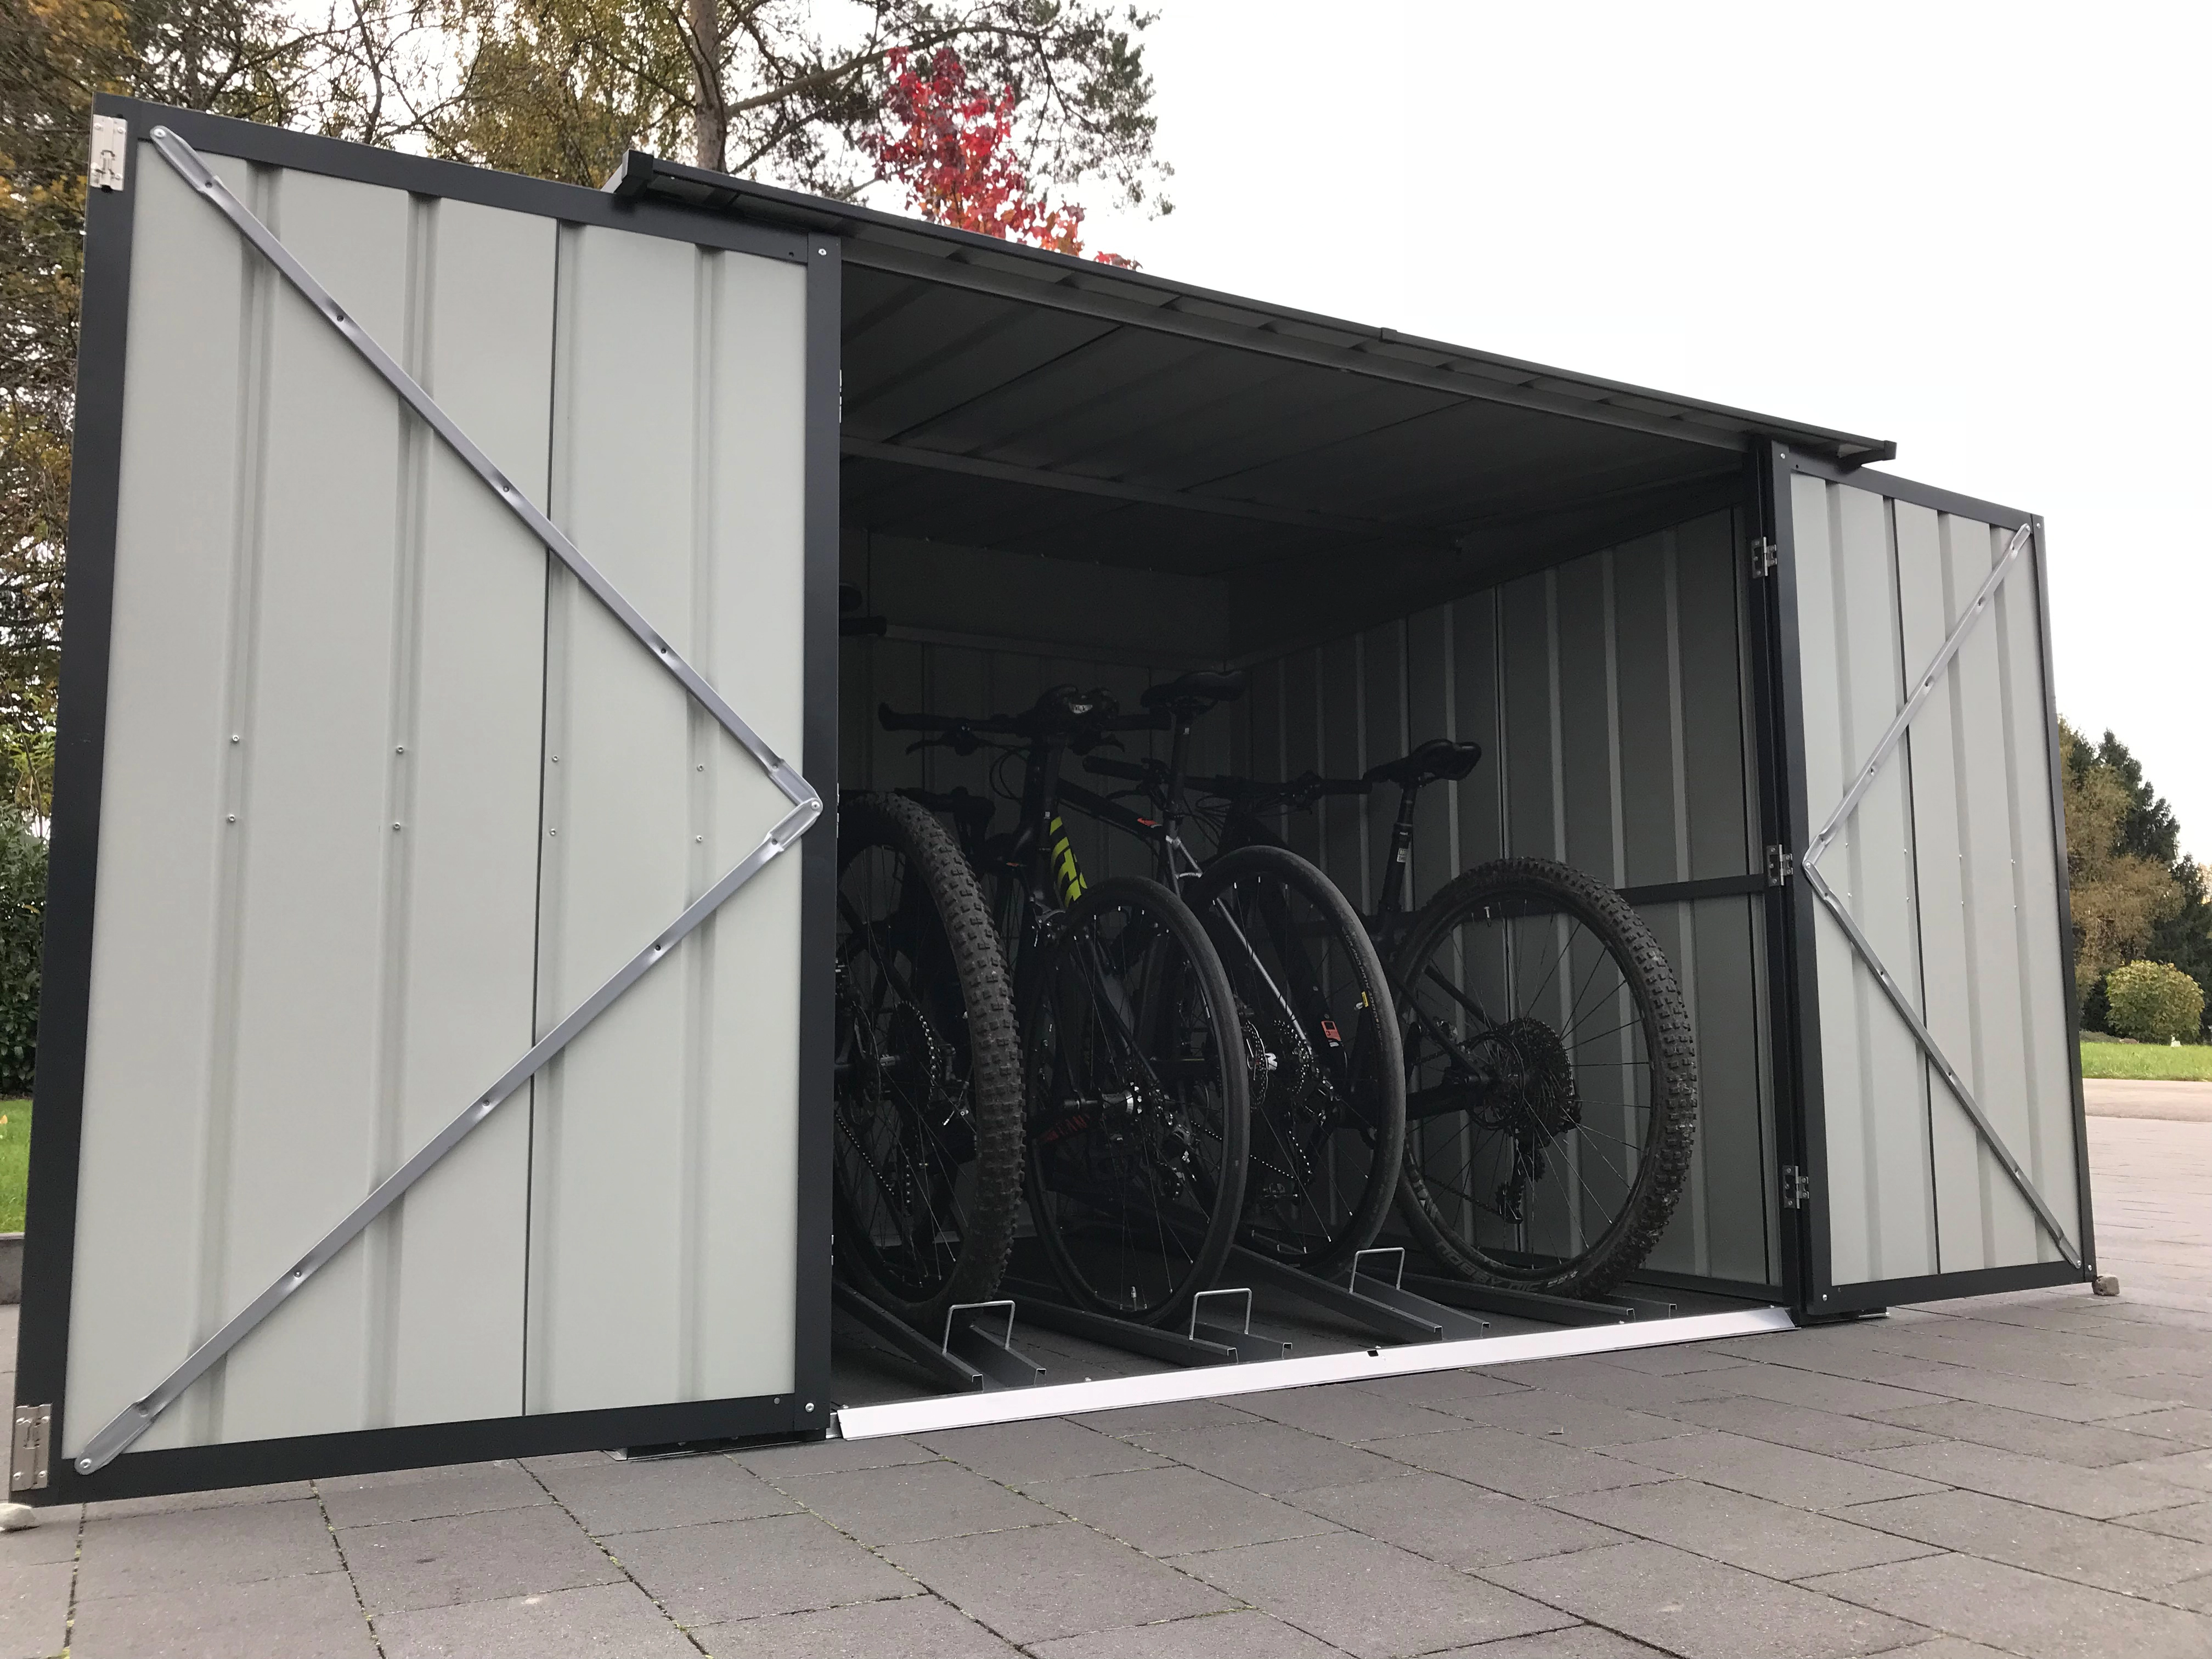 Garage à Vélo en Acier Anthracite 4 m²